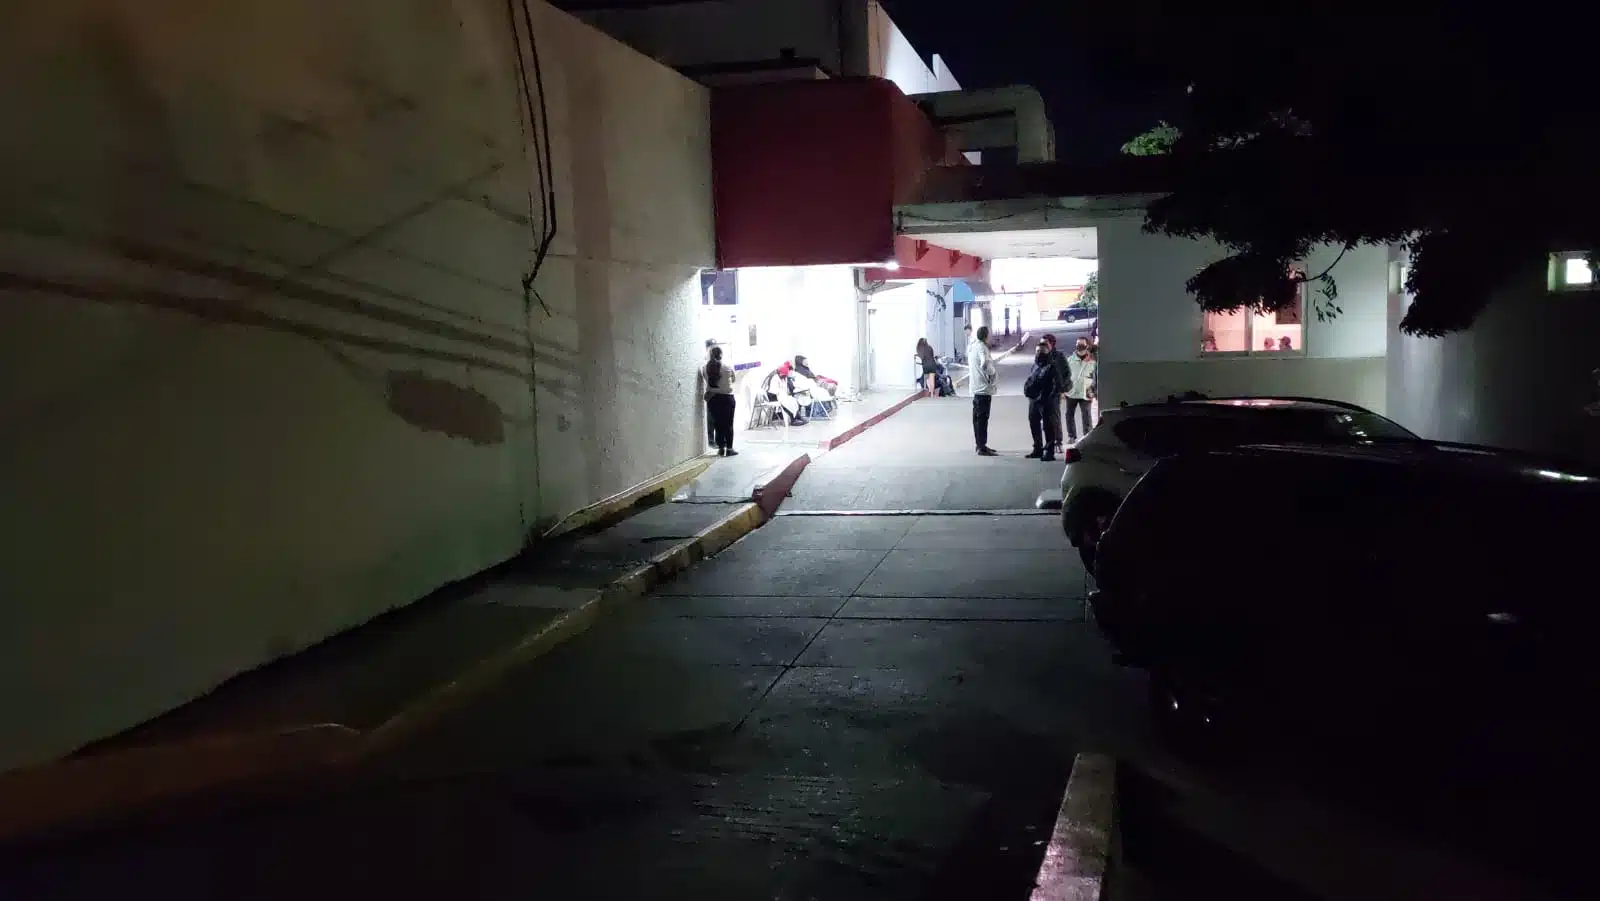 José Guadalupe sufrió accidente en Angostura y muere en Hospital General de Culiacán